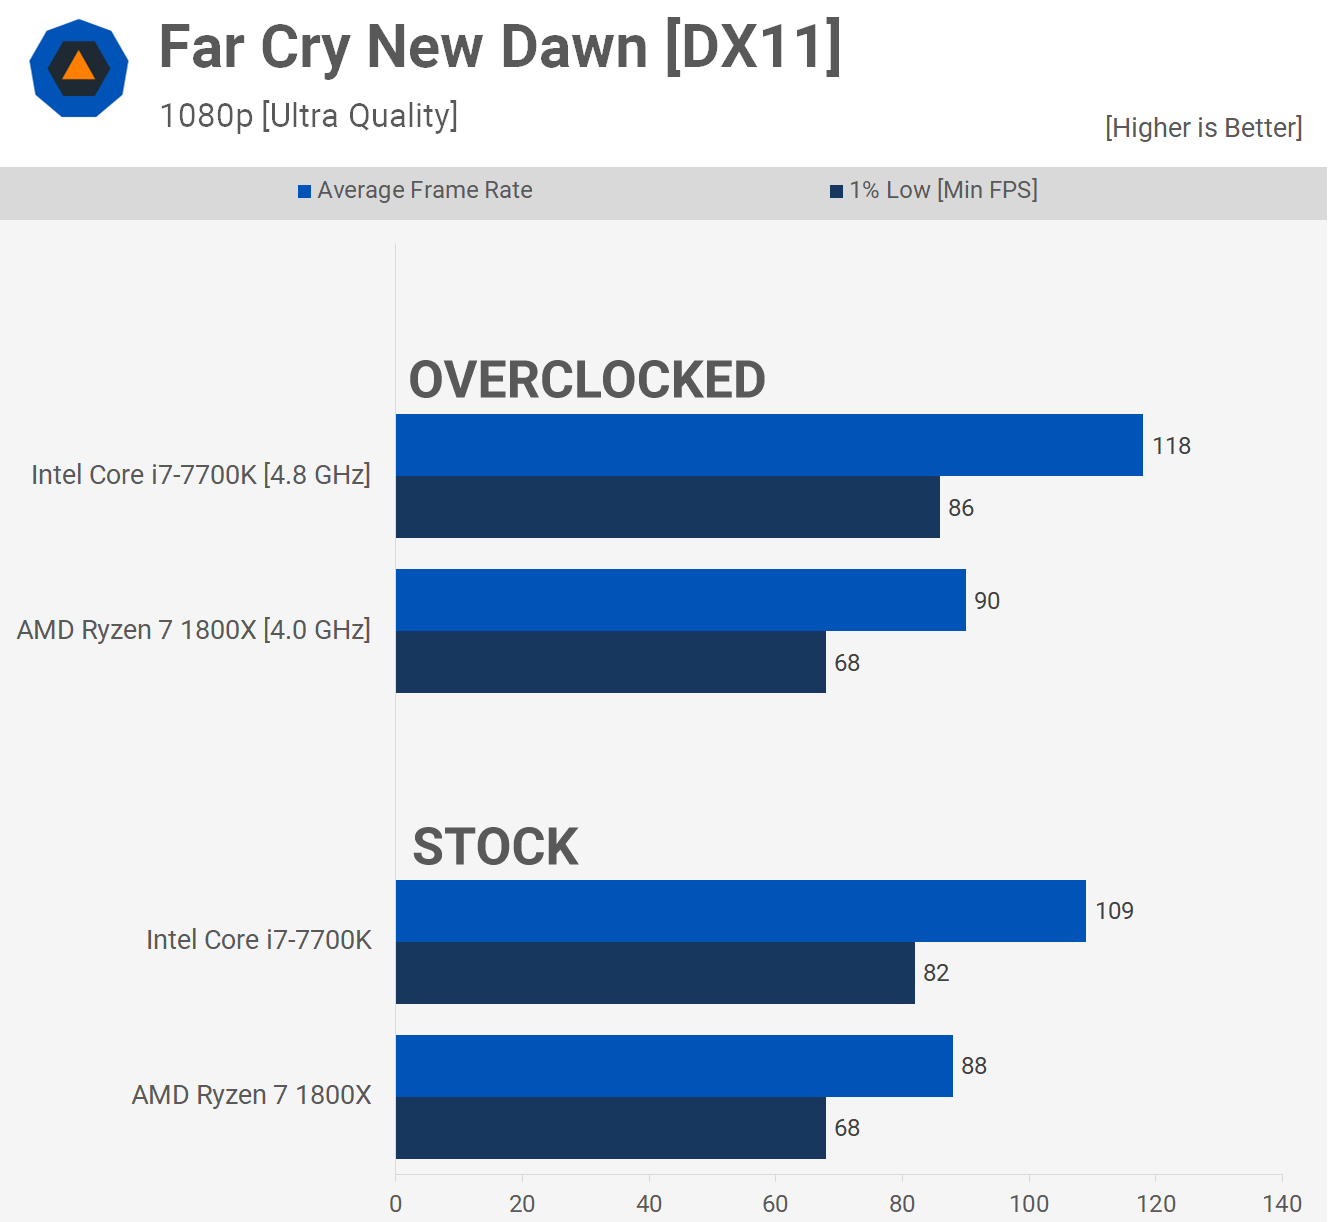 1658426422 470 Dos anos despues AMD Ryzen 7 1800X vs Intel Core